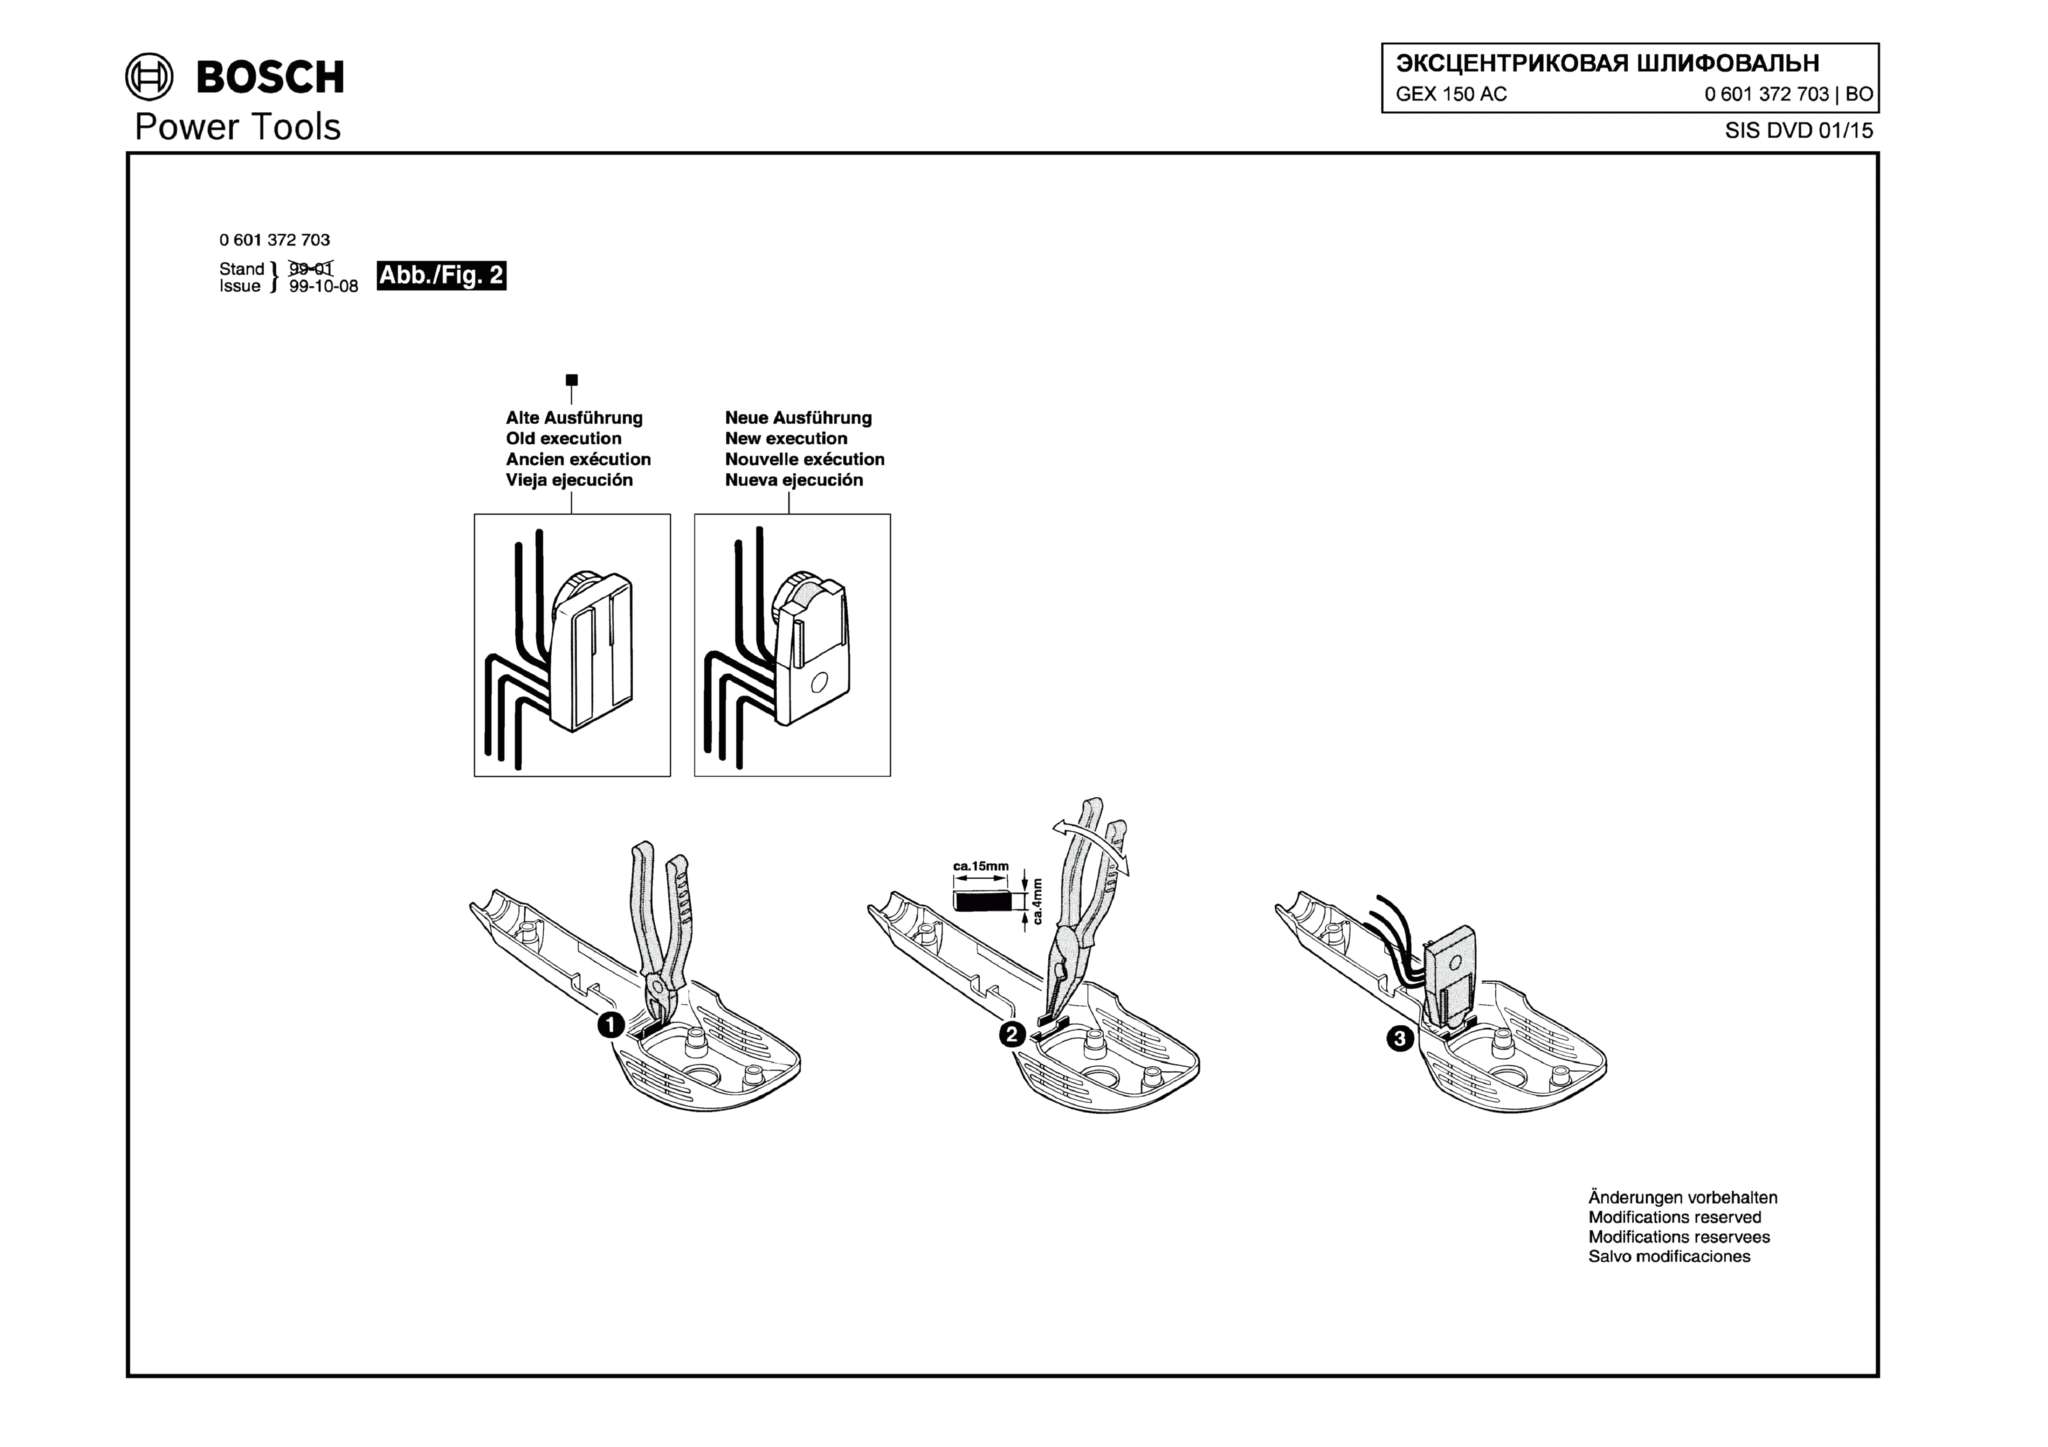 Запчасти, схема и деталировка Bosch GEX 150 AC (ТИП 0601372708) (ЧАСТЬ 2)